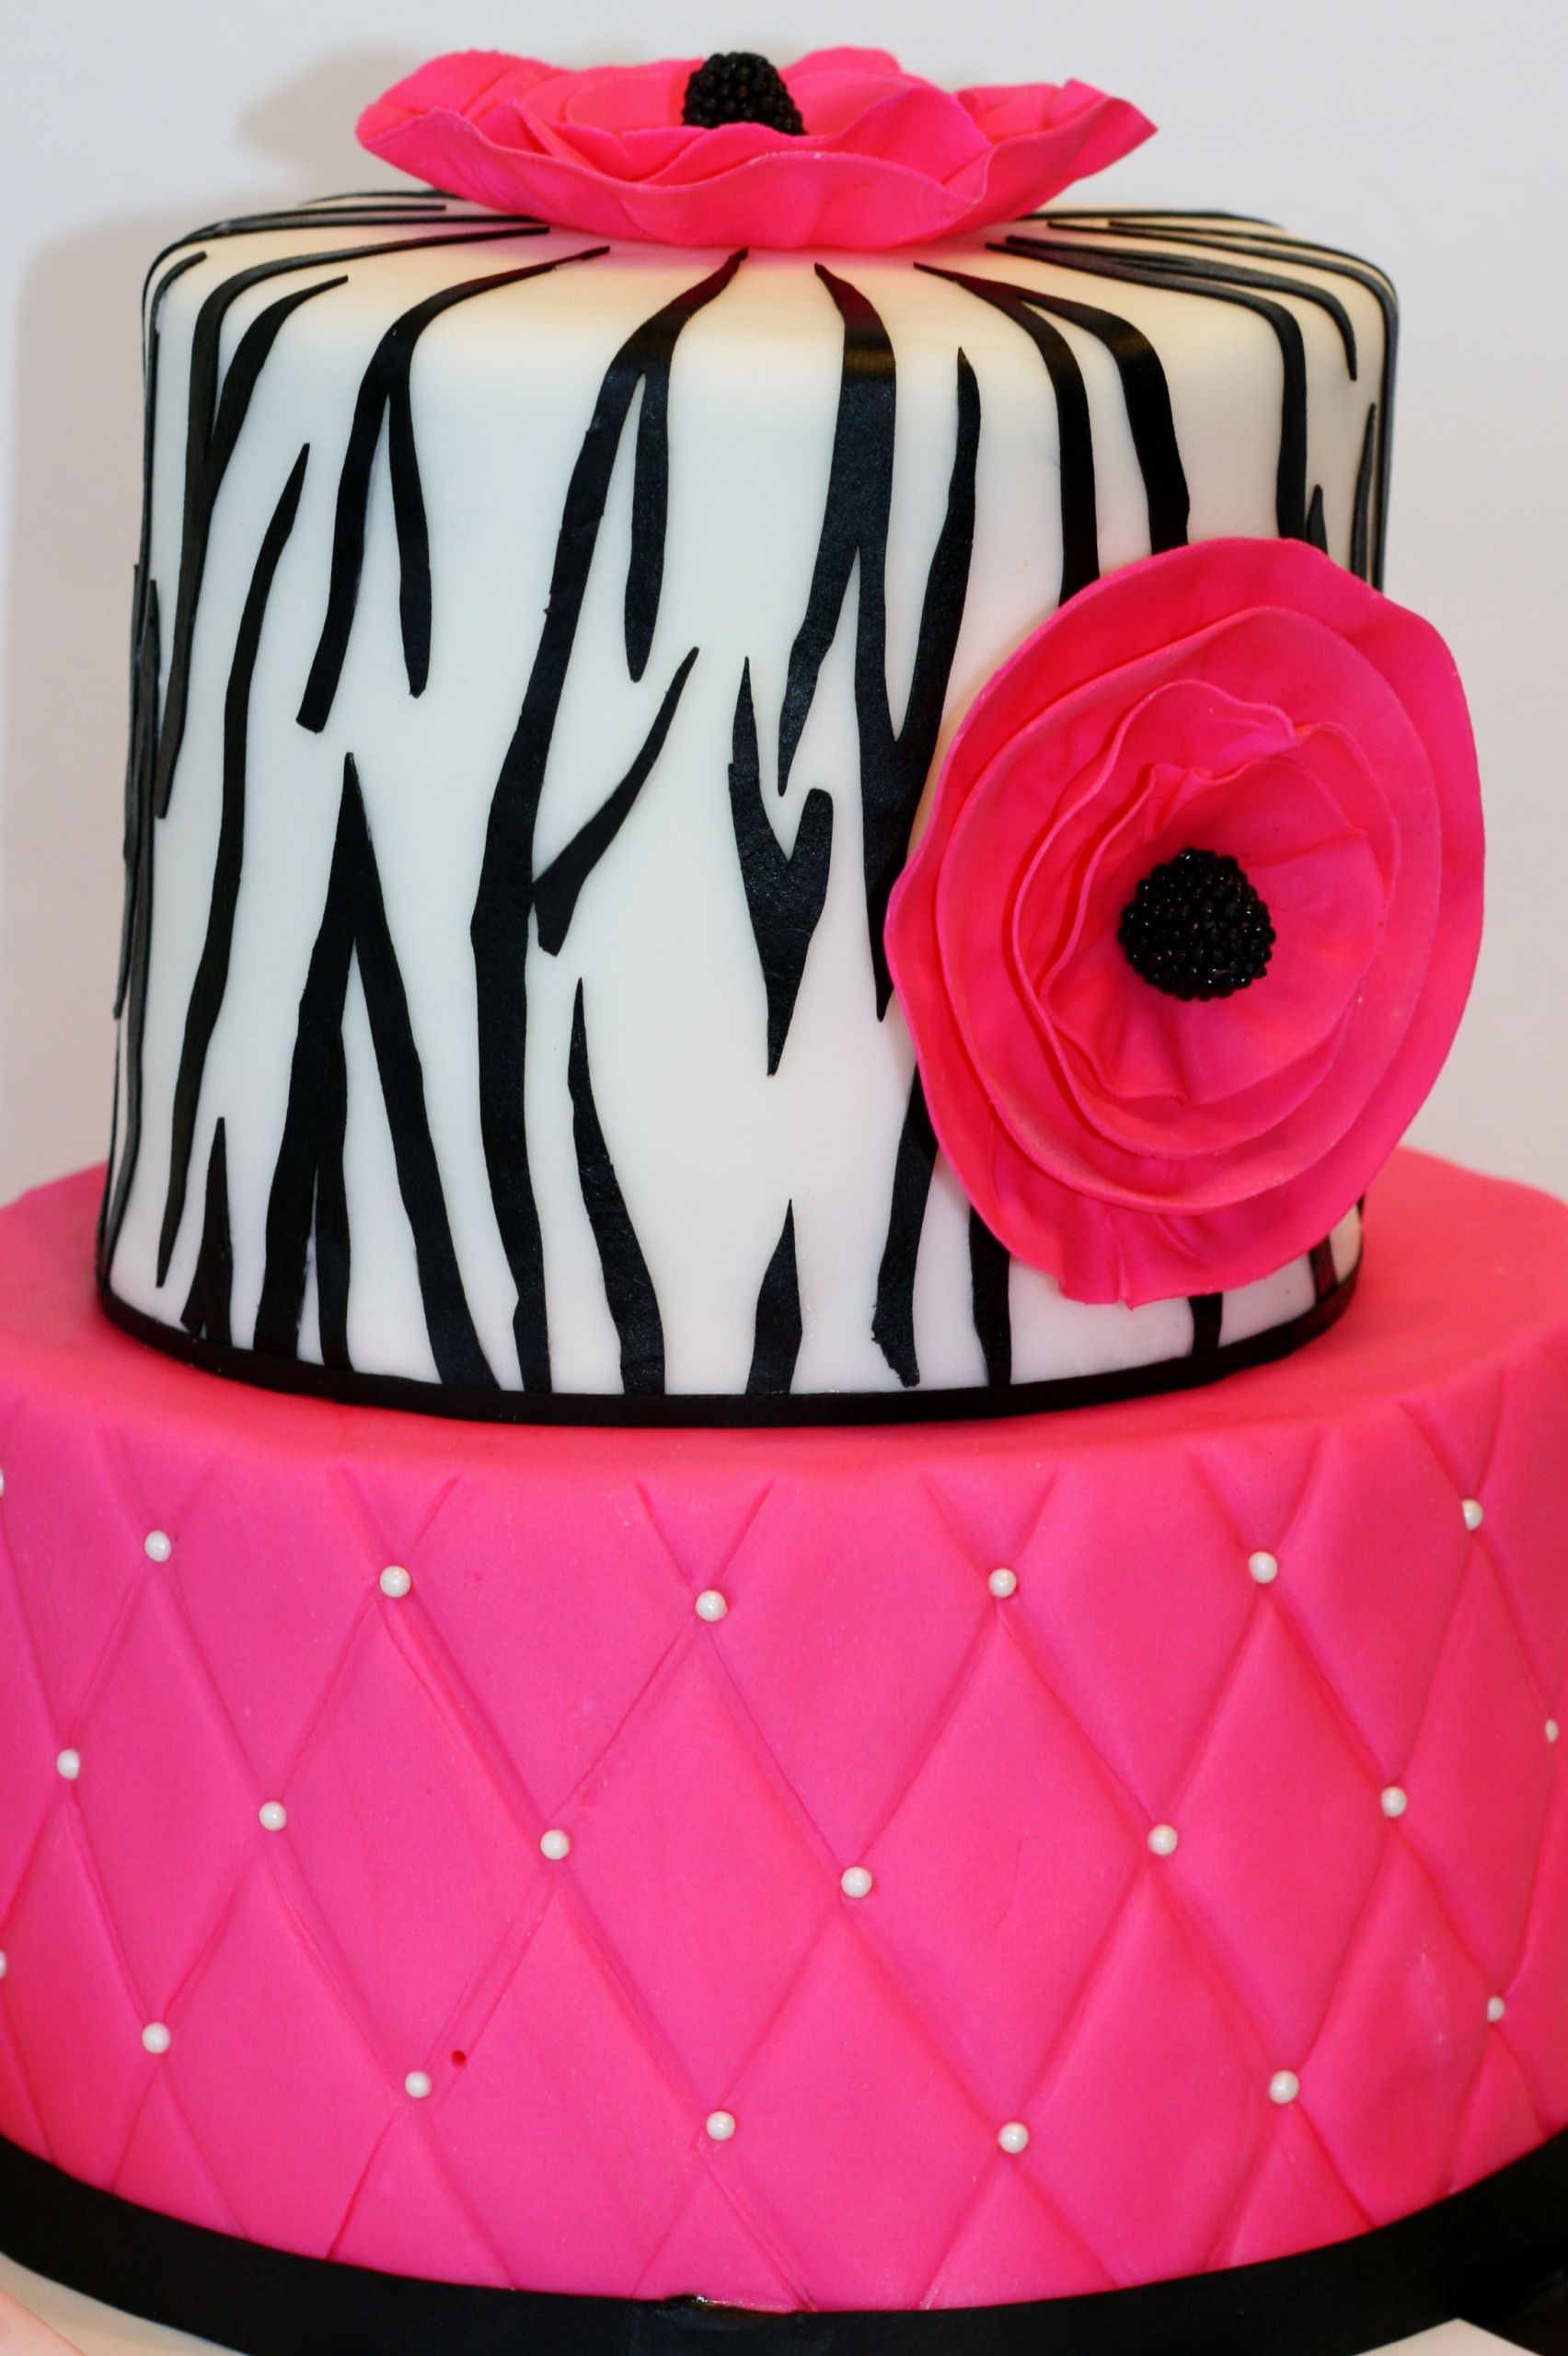 Zebra Birthday Cake
 Sunday Showcase Hot Pink and Zebra Birthday Cake